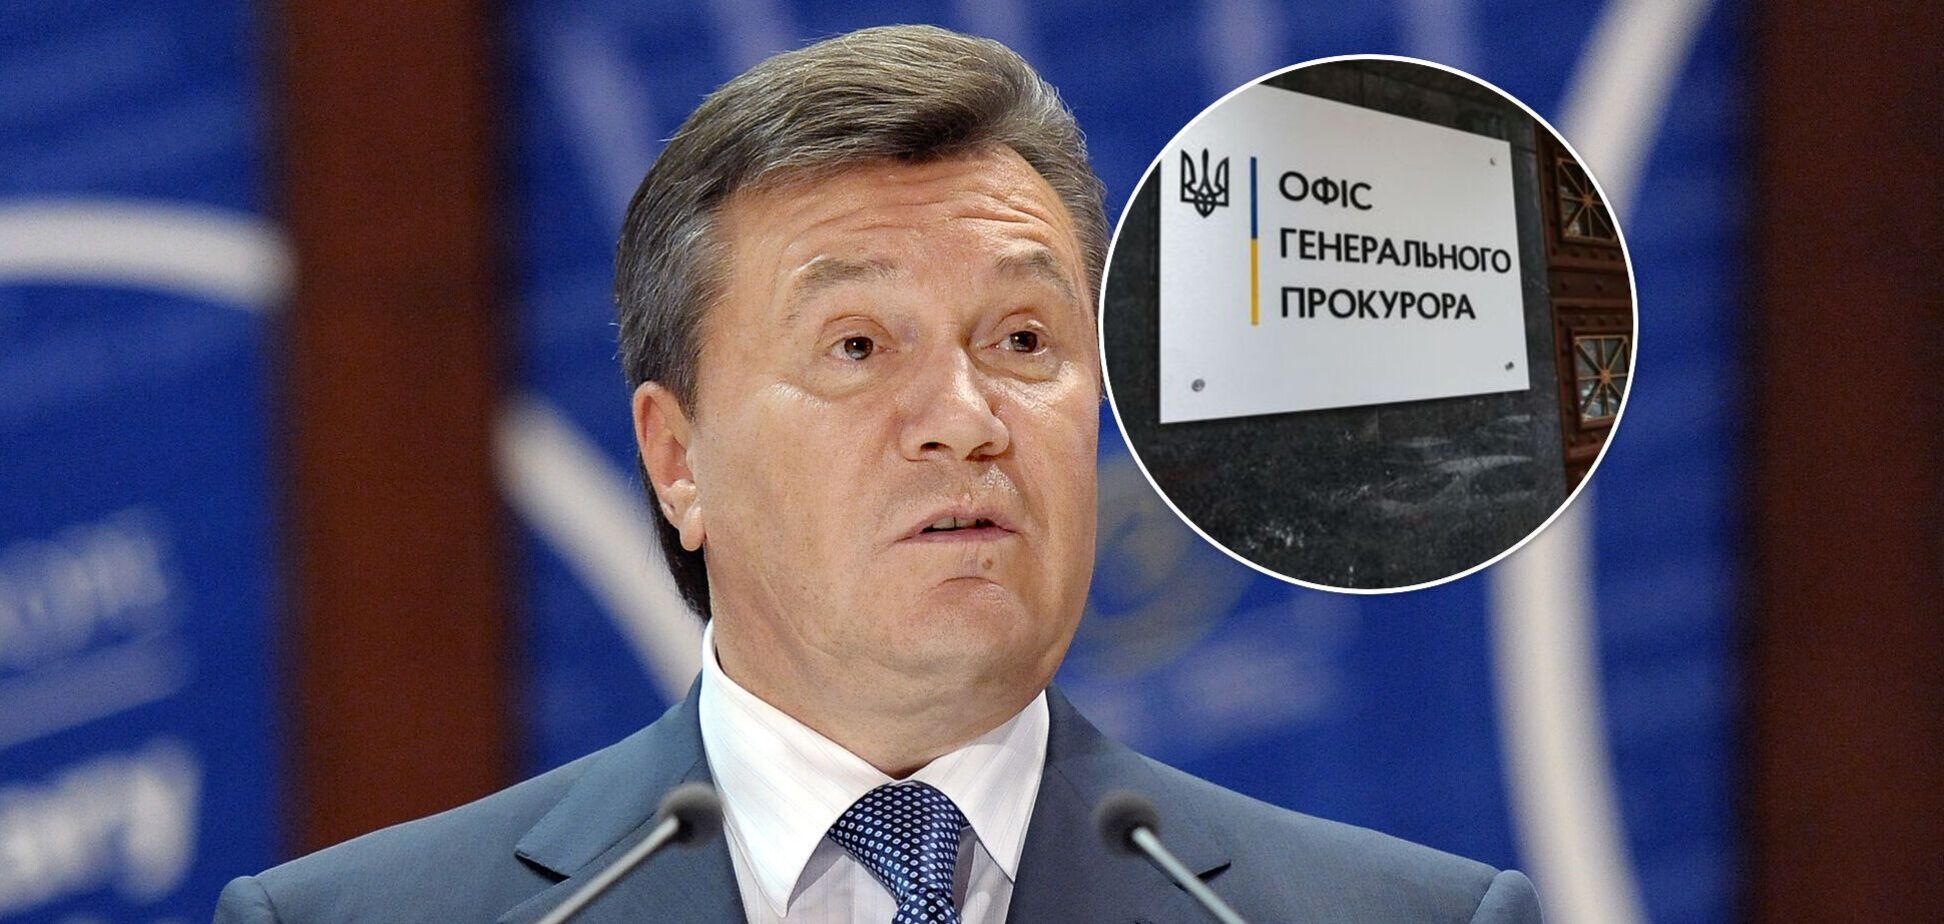 Суд дозволив спецрозслідування щодо Януковича через захоплення влади